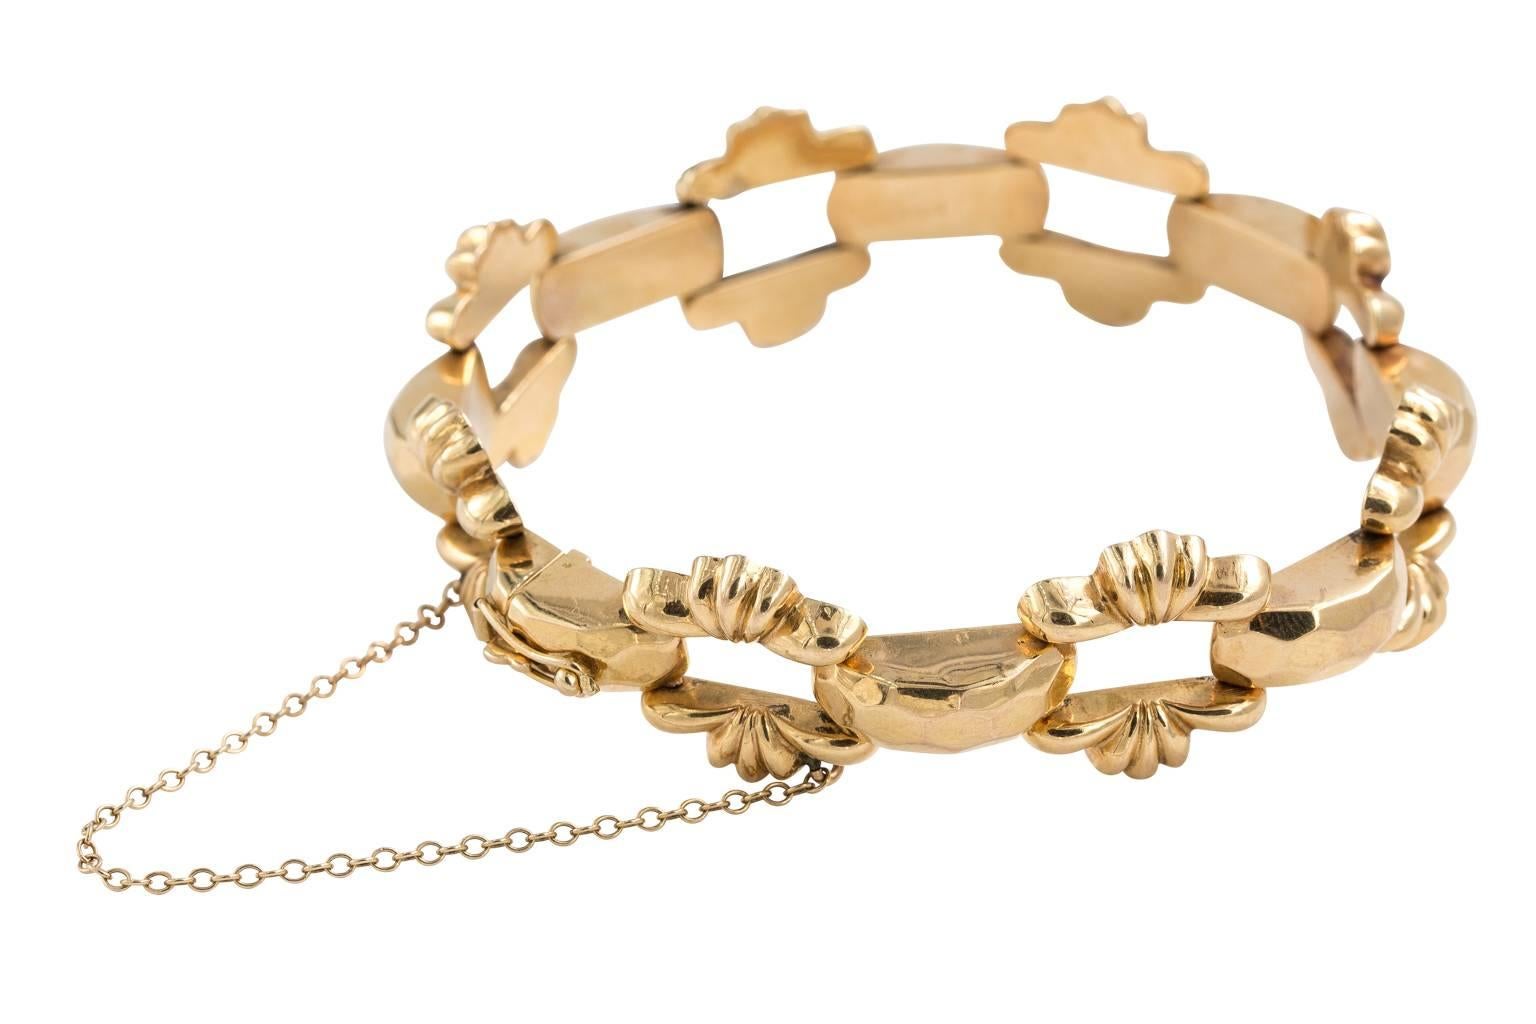 Mid-20th century 18kt gold link bracelet. 